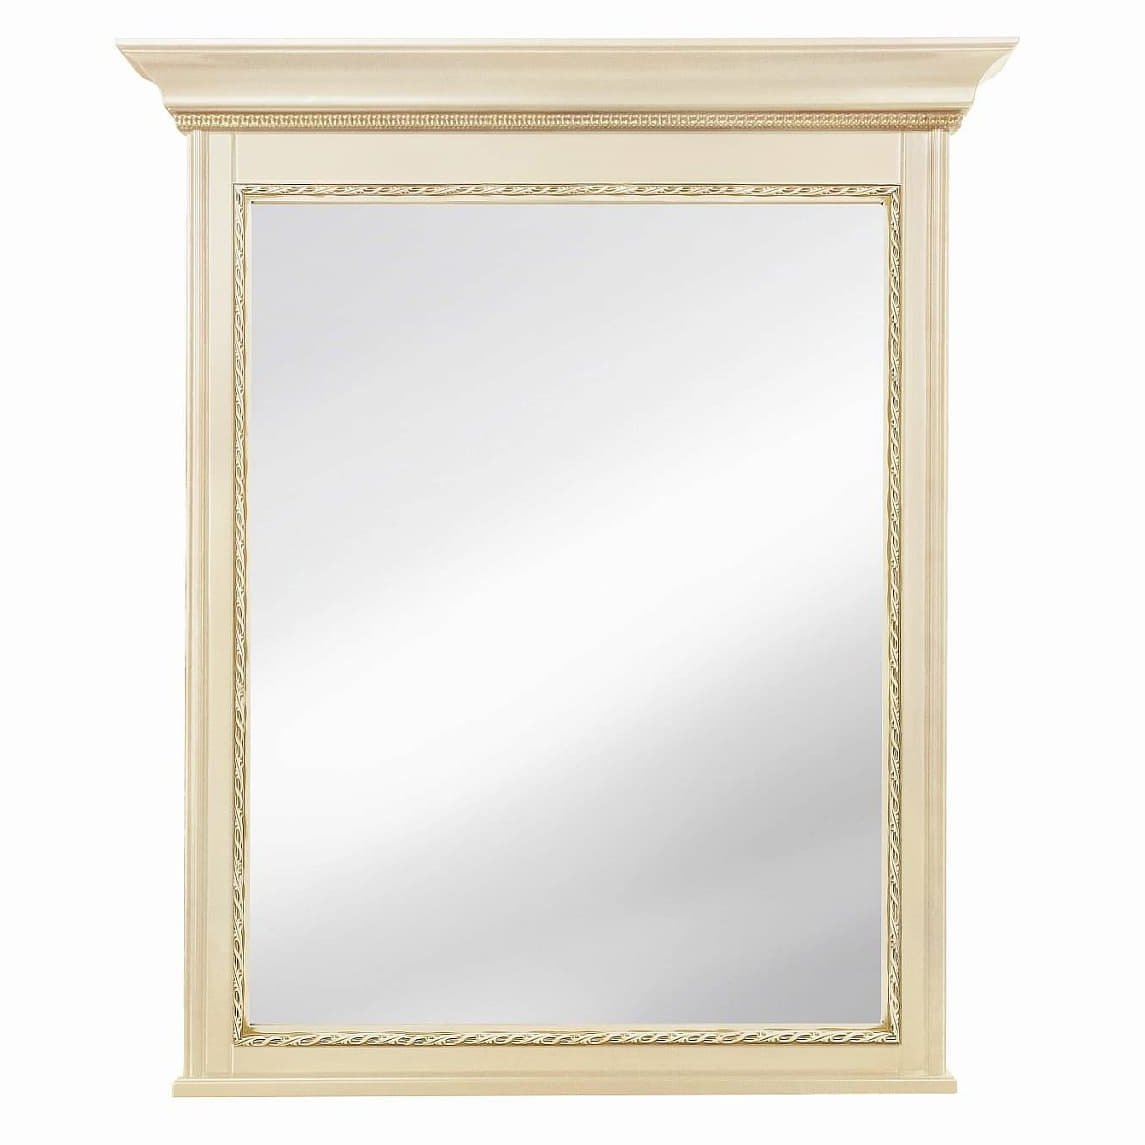 Зеркало Timber Неаполь, навесное 94x110 см цвет: ваниль с золотом (T-527)T-527